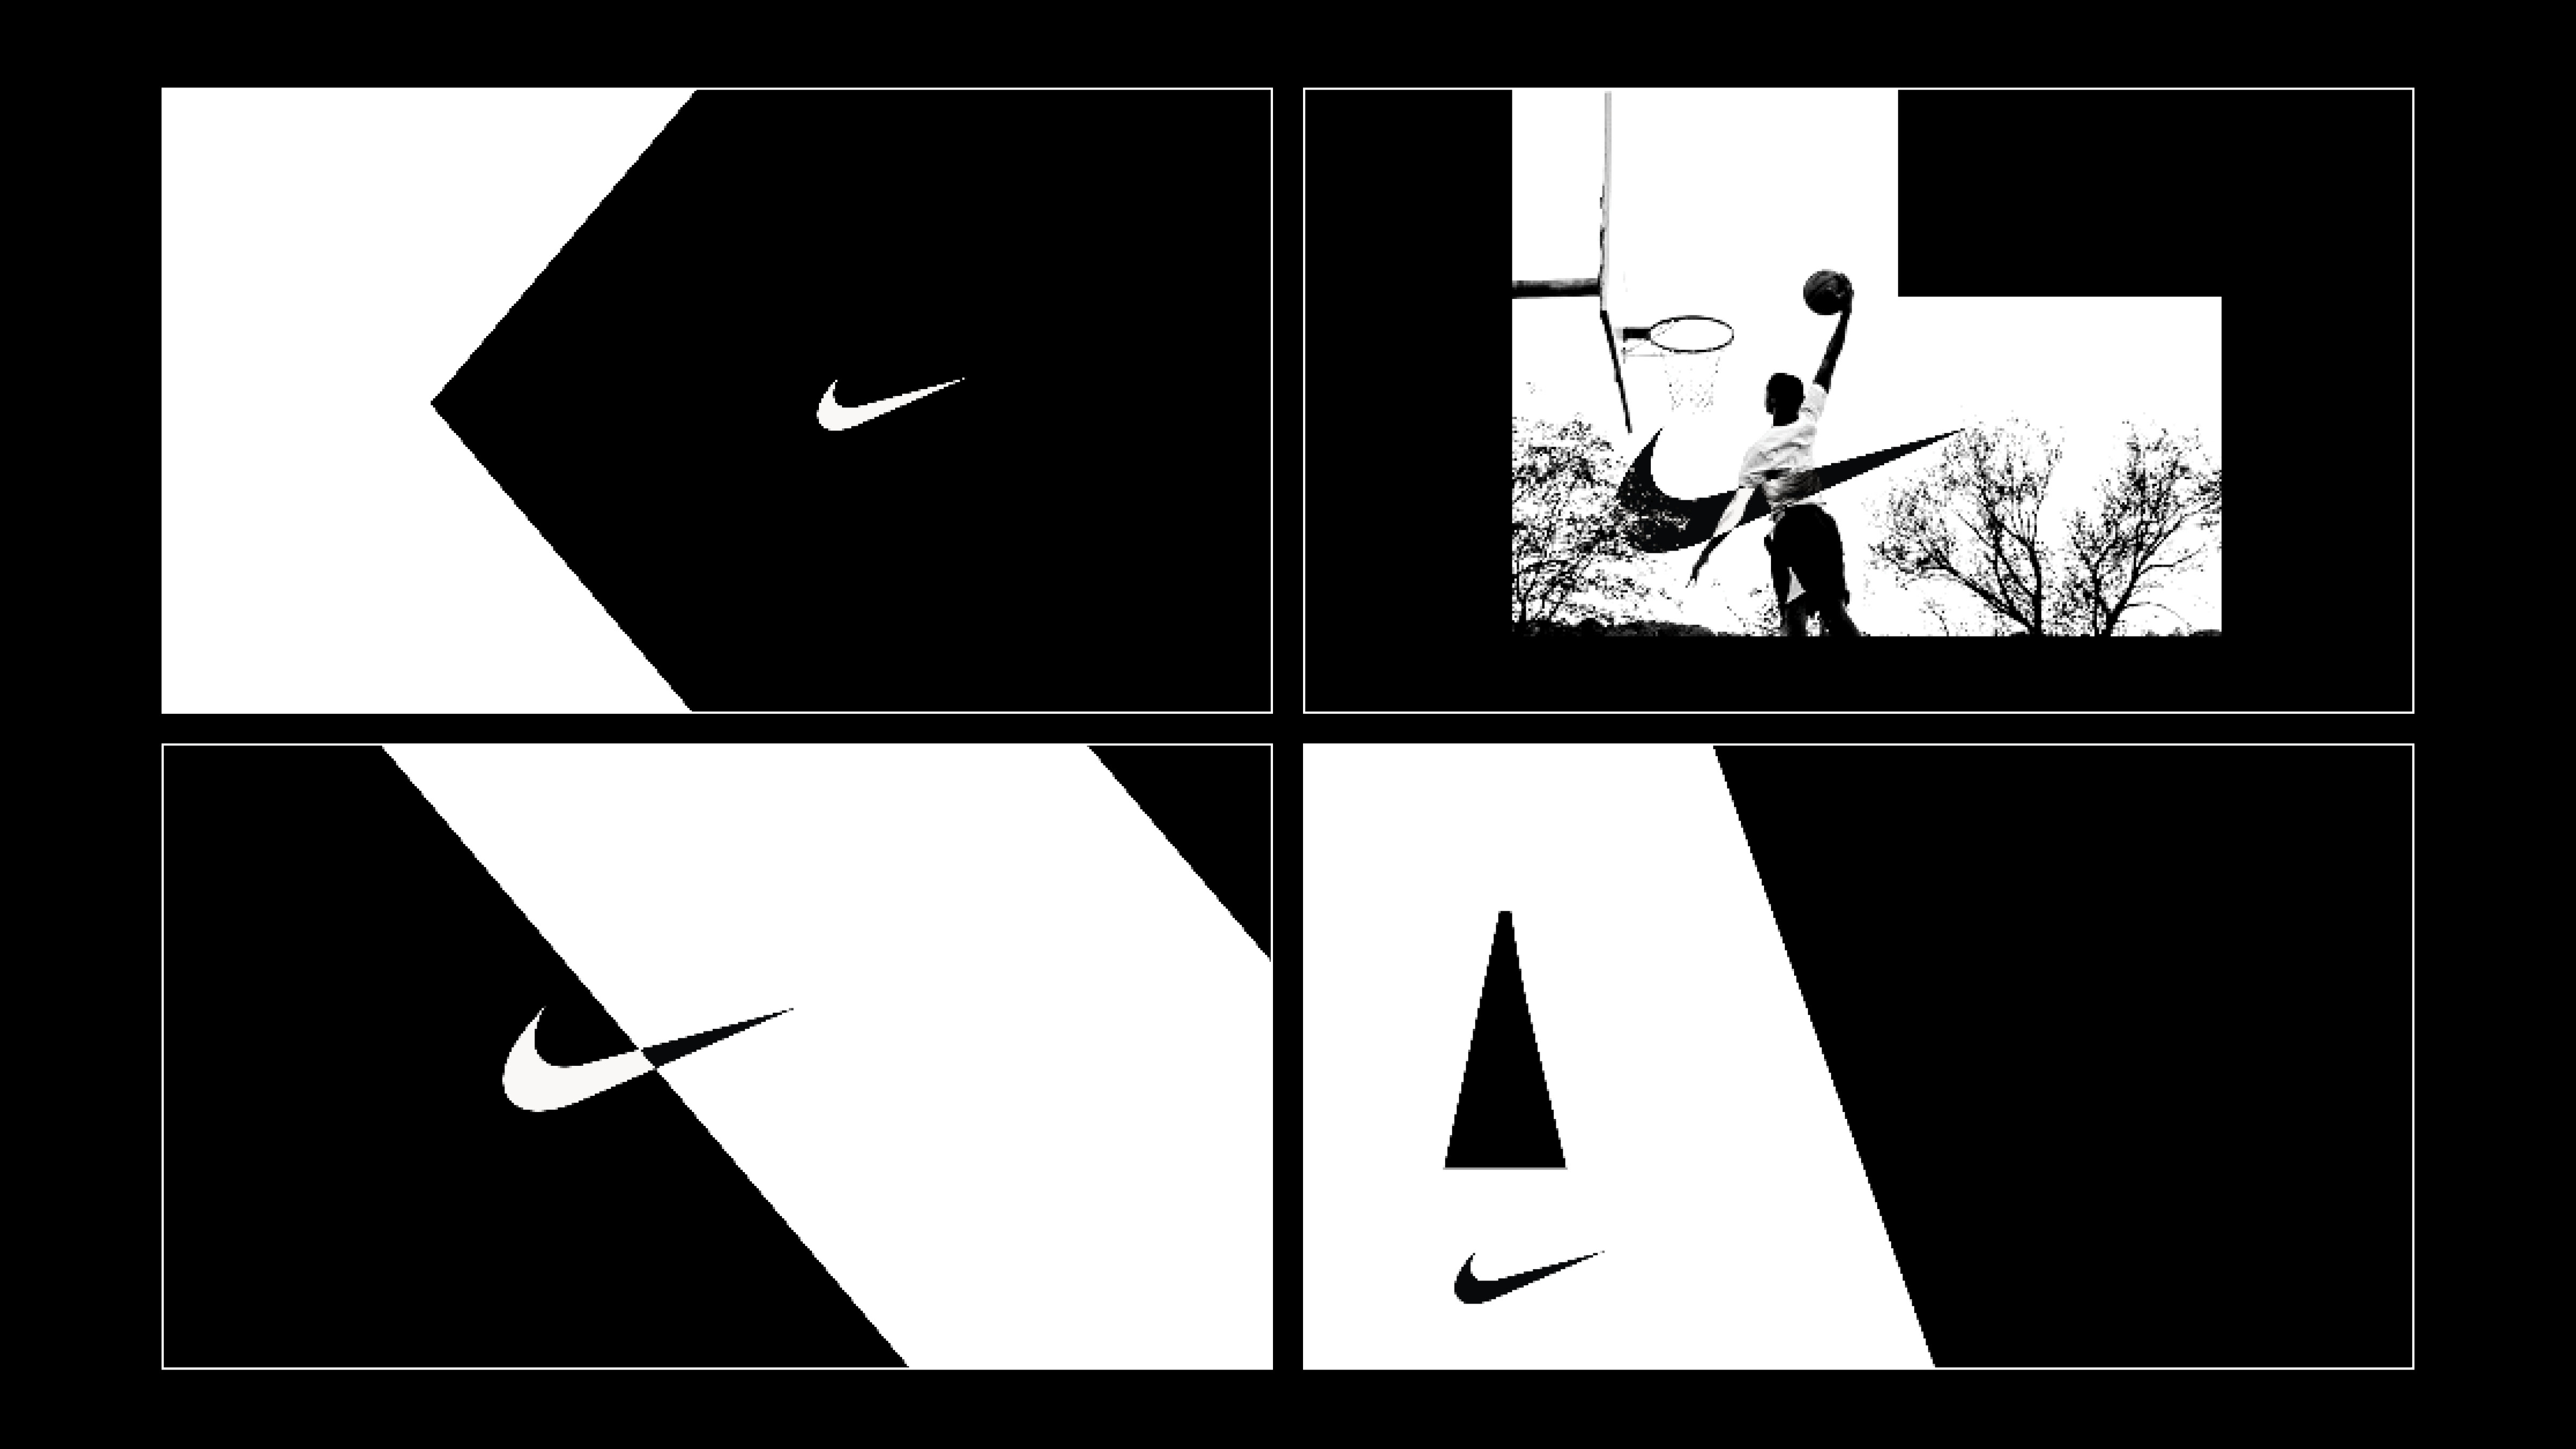 NikeBranding11